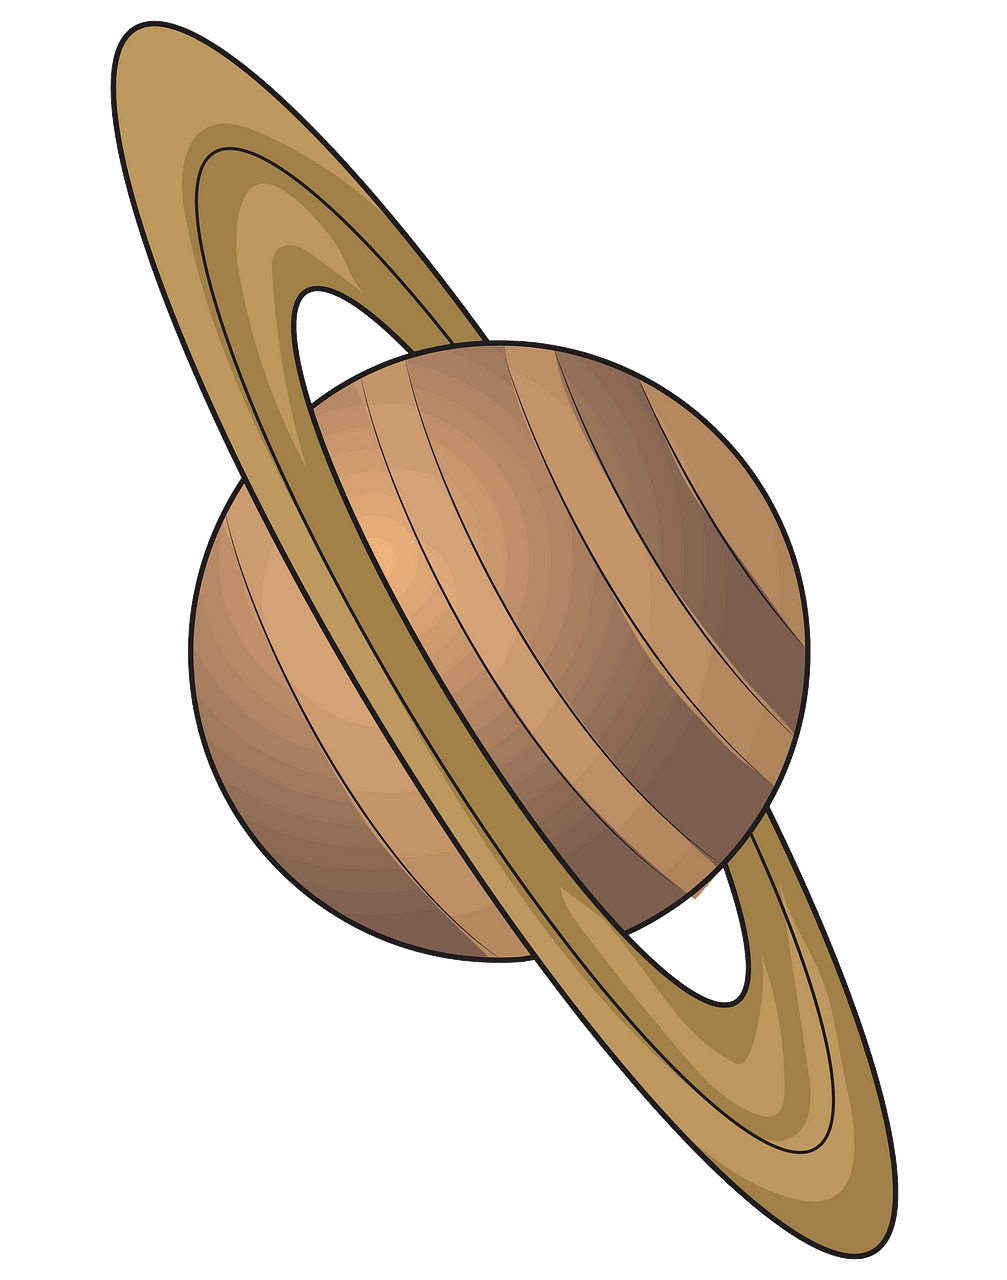 Сатурн картинка для детей